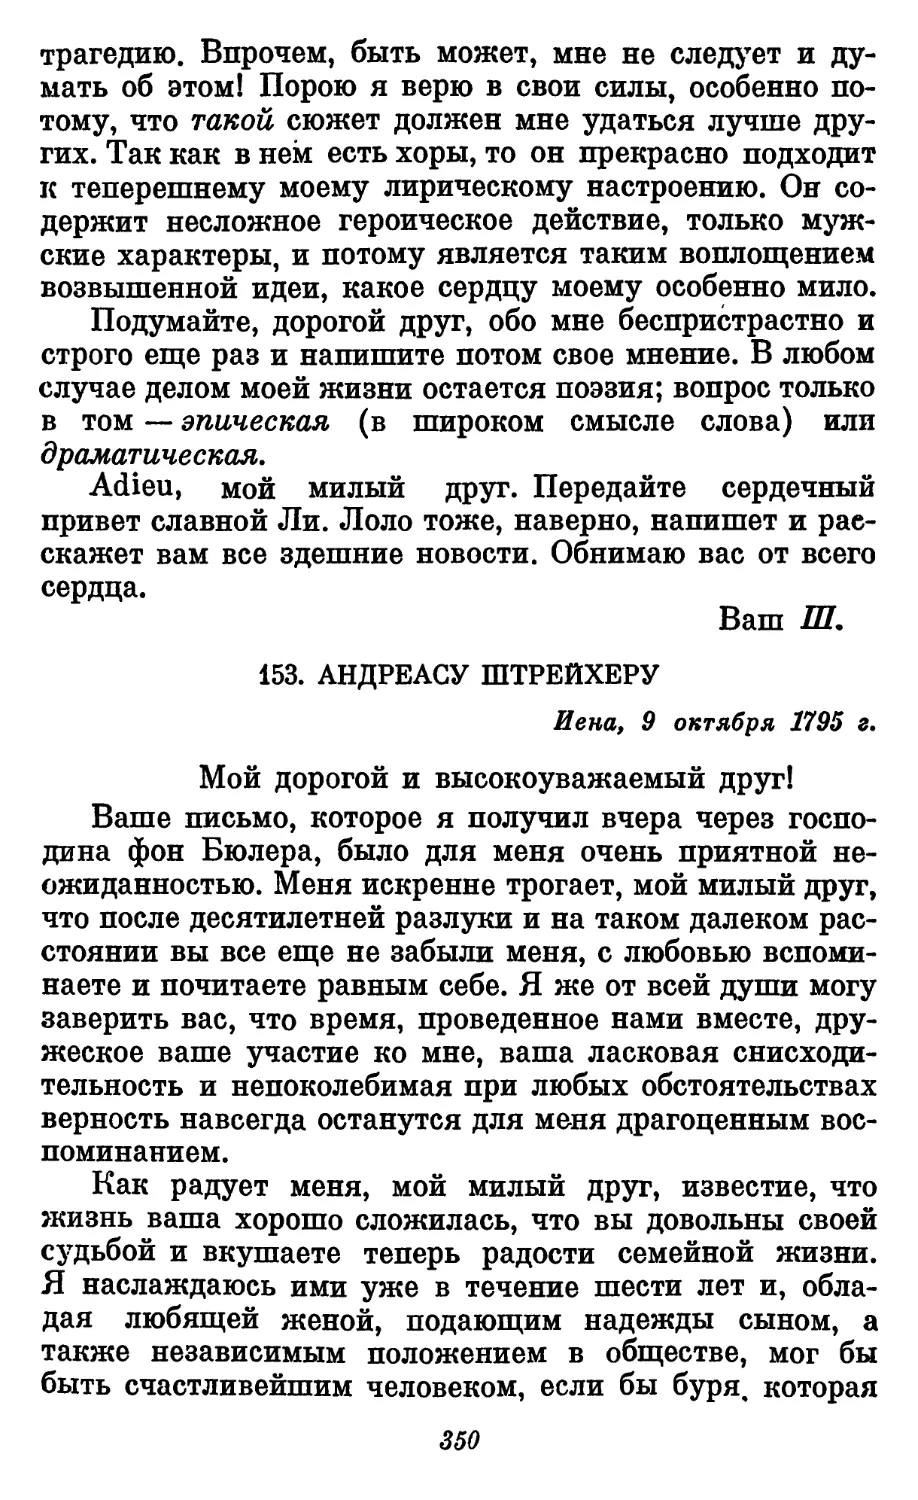 153. Андреасу Штрейхеру, 9. октября 1795 г